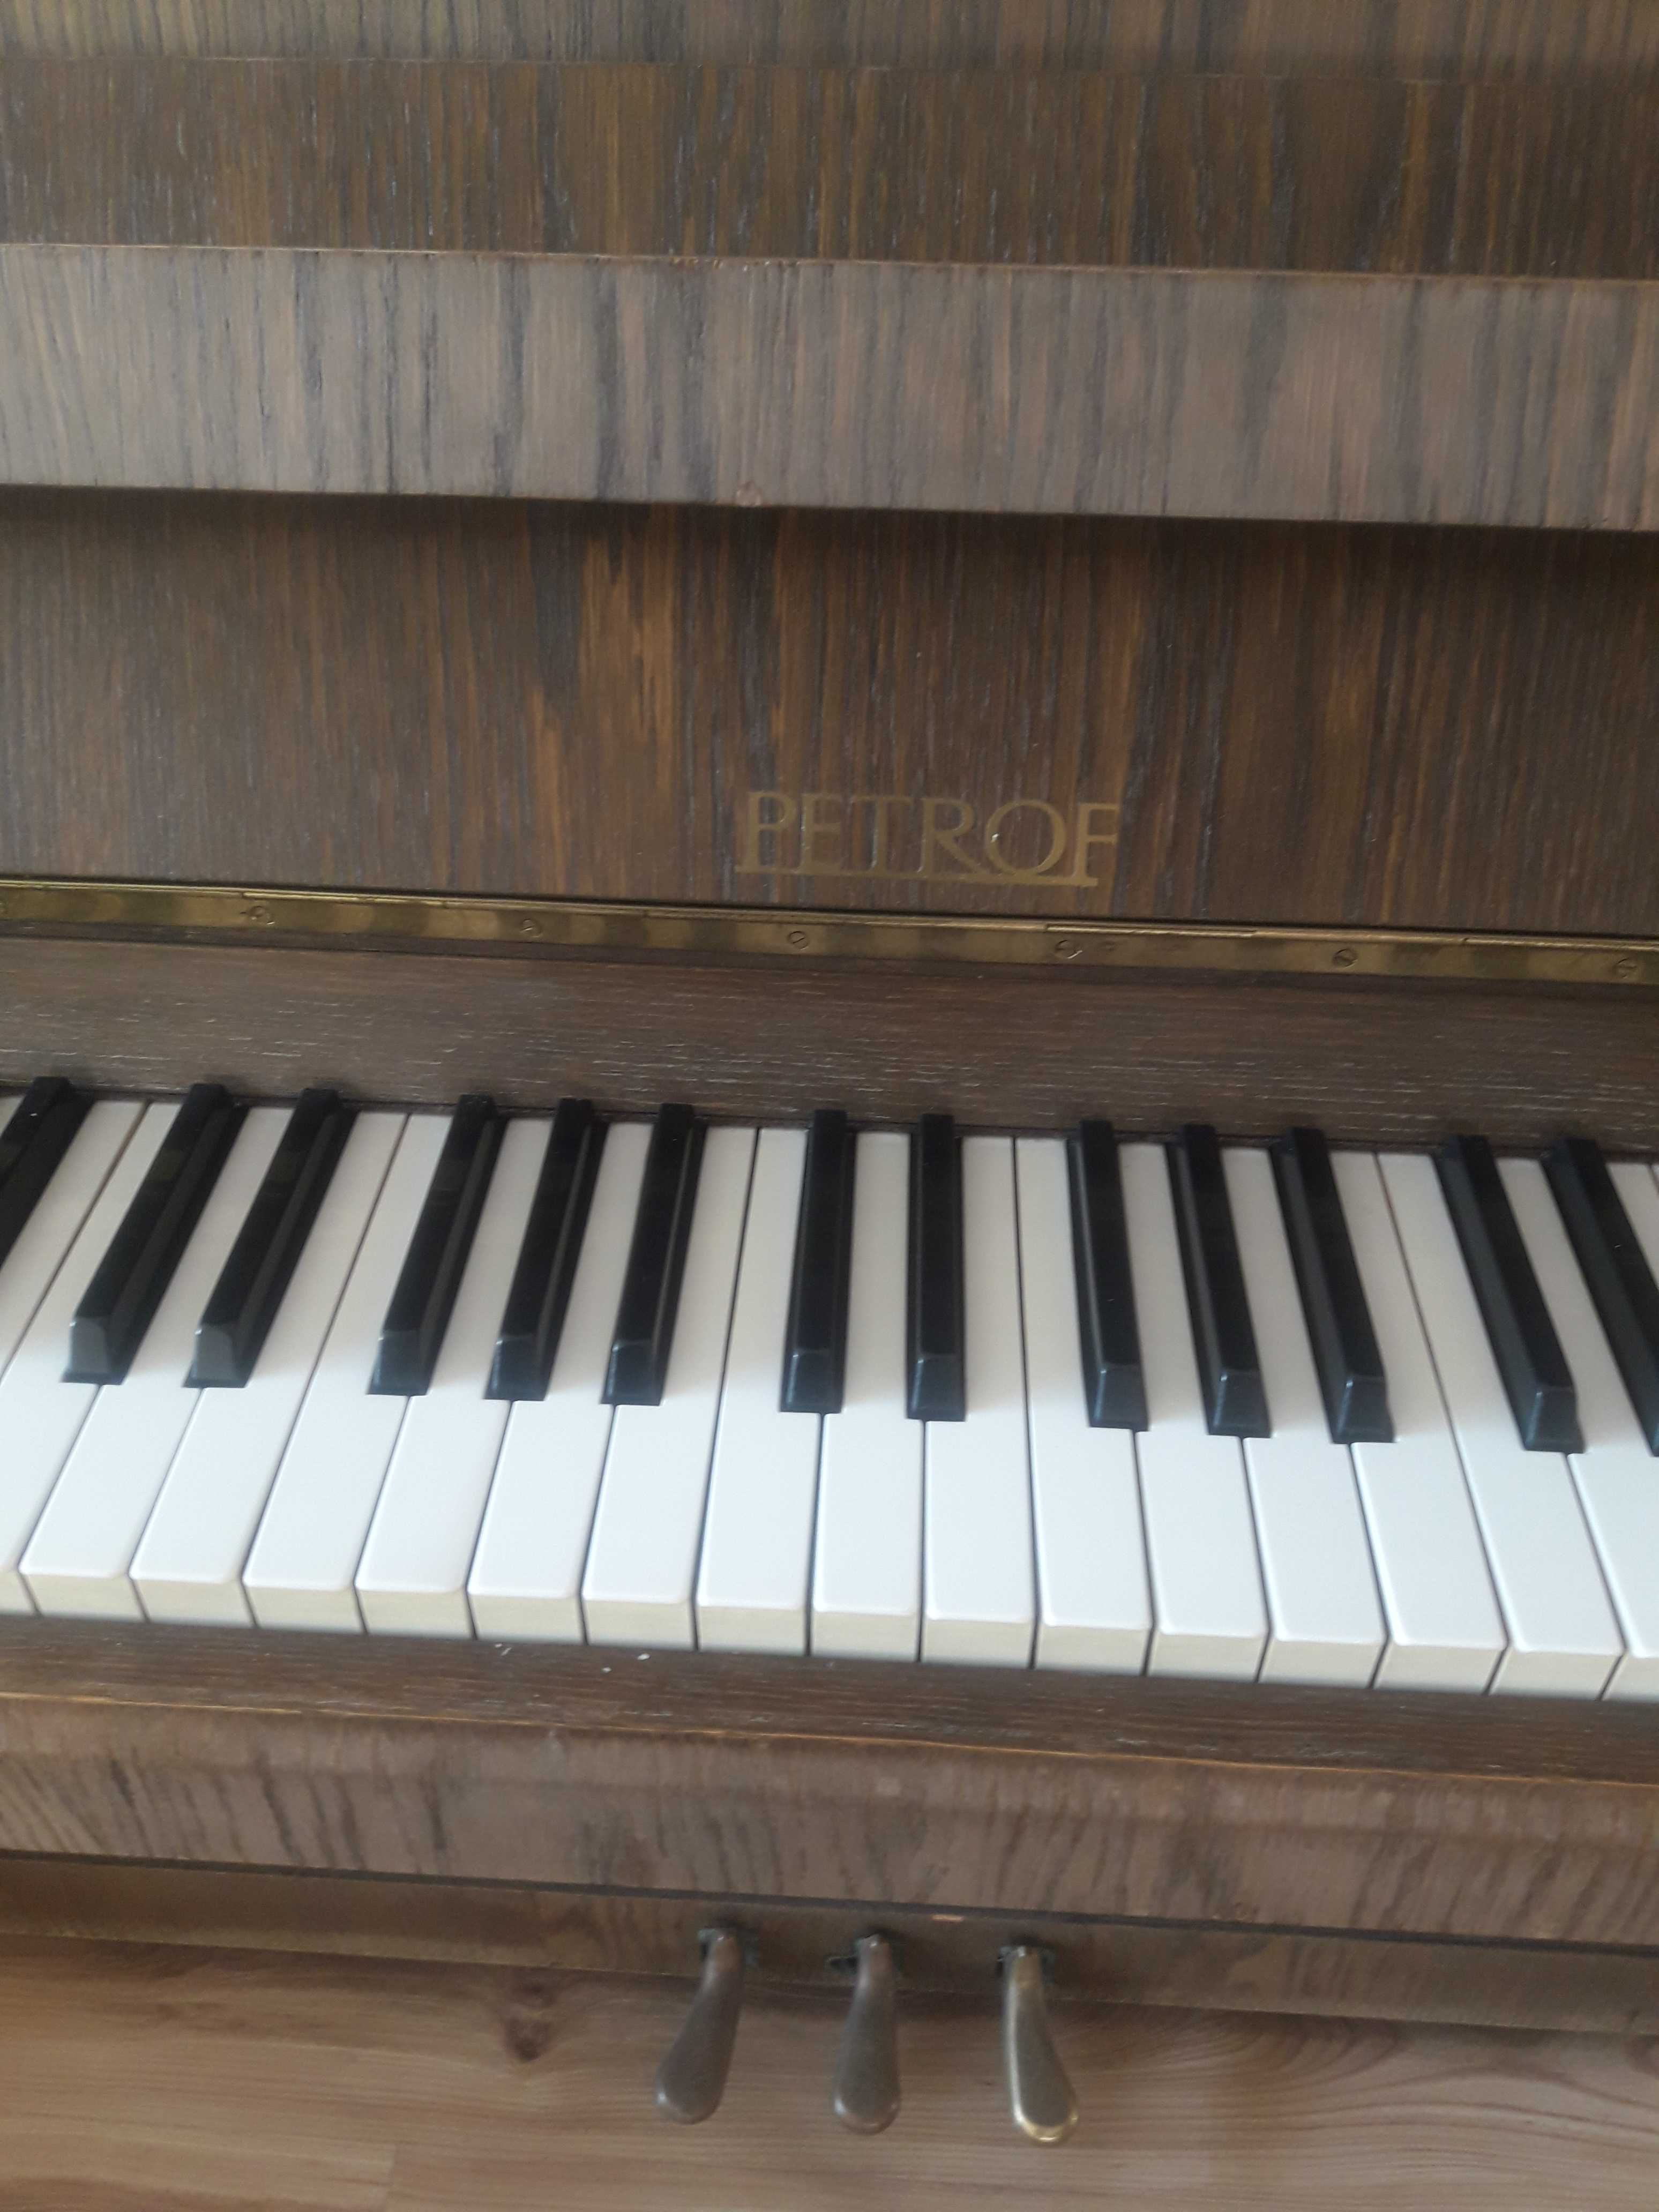 Продава се чешко акустично пиано Petrof, отлично състояние.